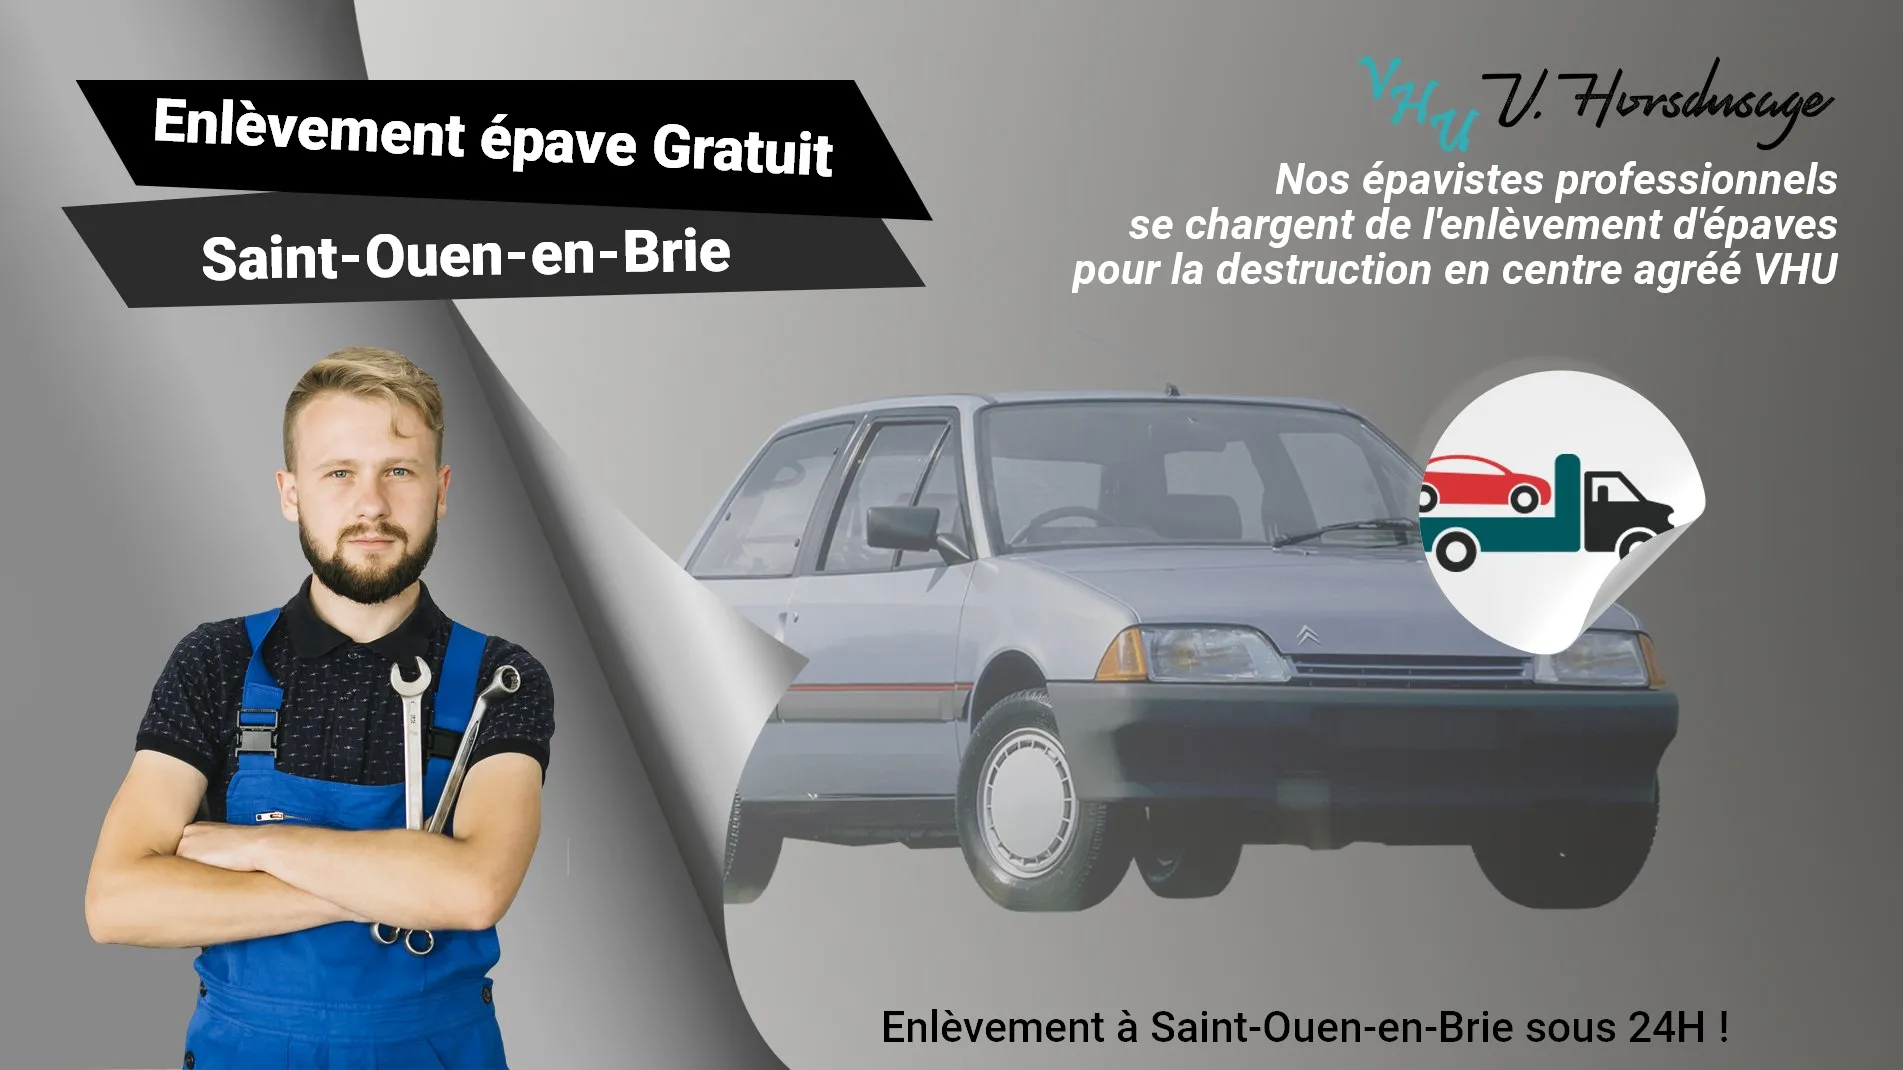 Pour un enlèvement gratuit à Saint-Ouen-en-Brie, contactez nos épavistes agréé VHU